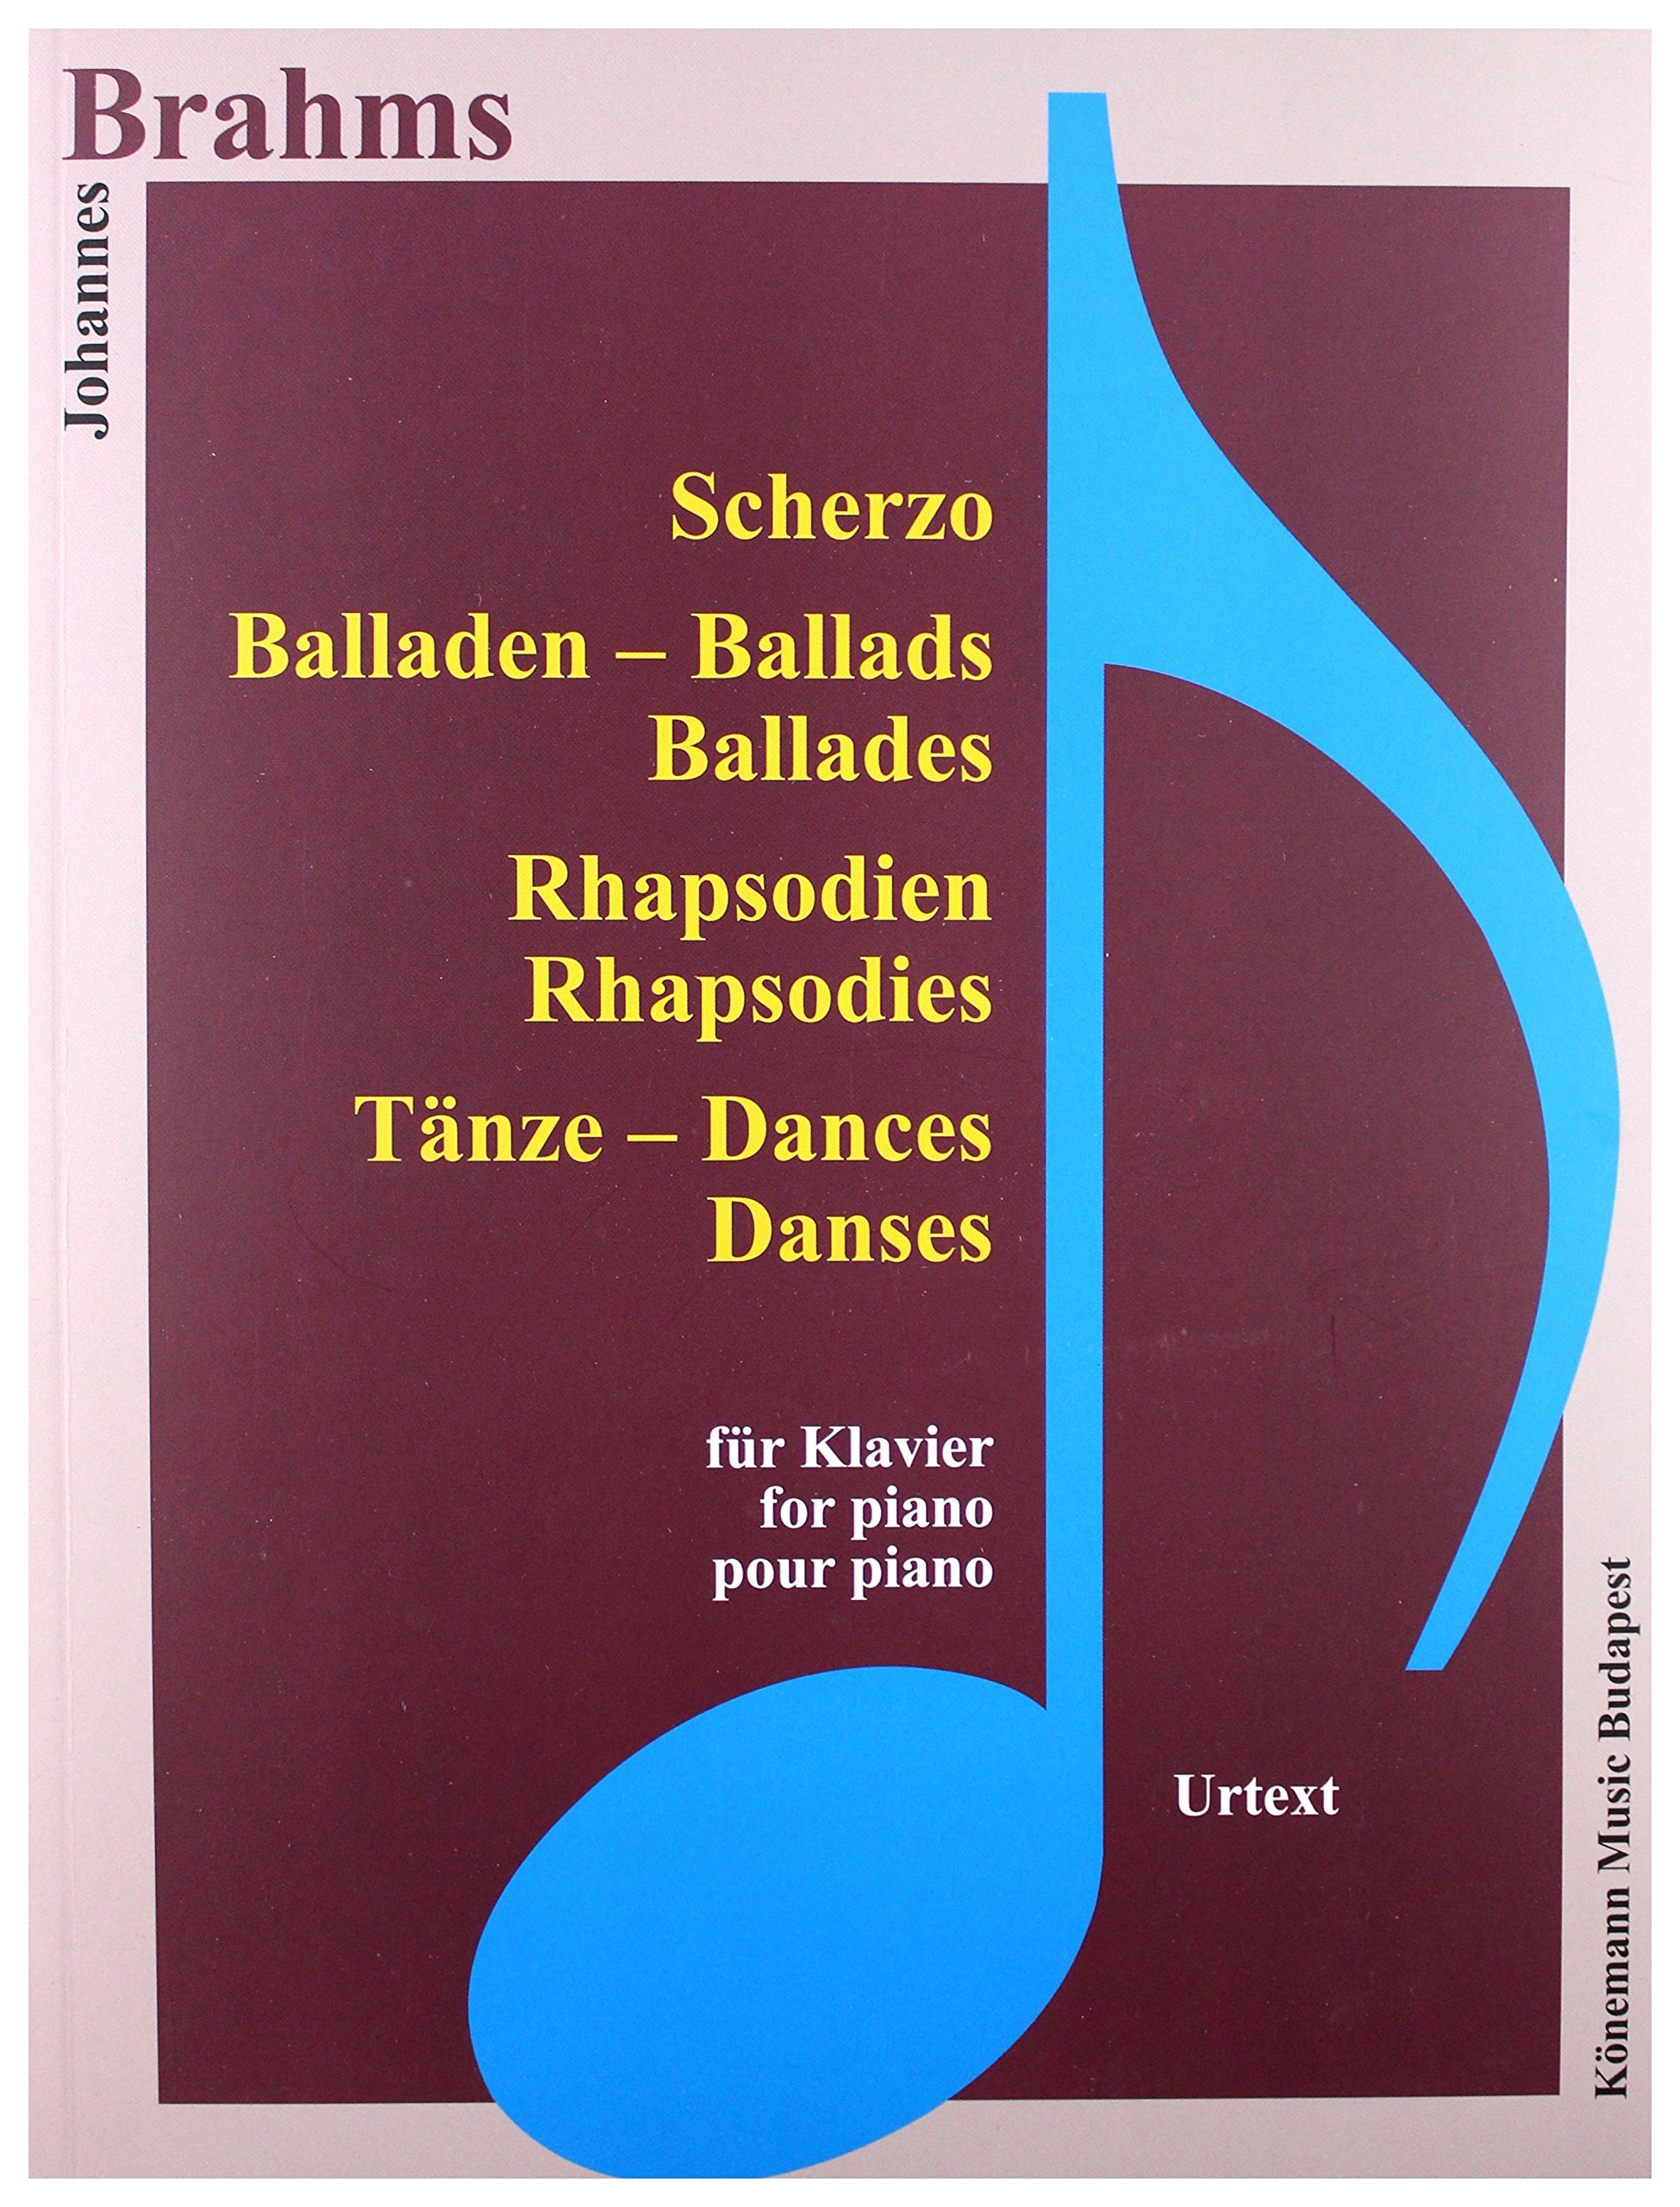 Brahms  Scherzo, Balladen, Rhapsodien und Tanze